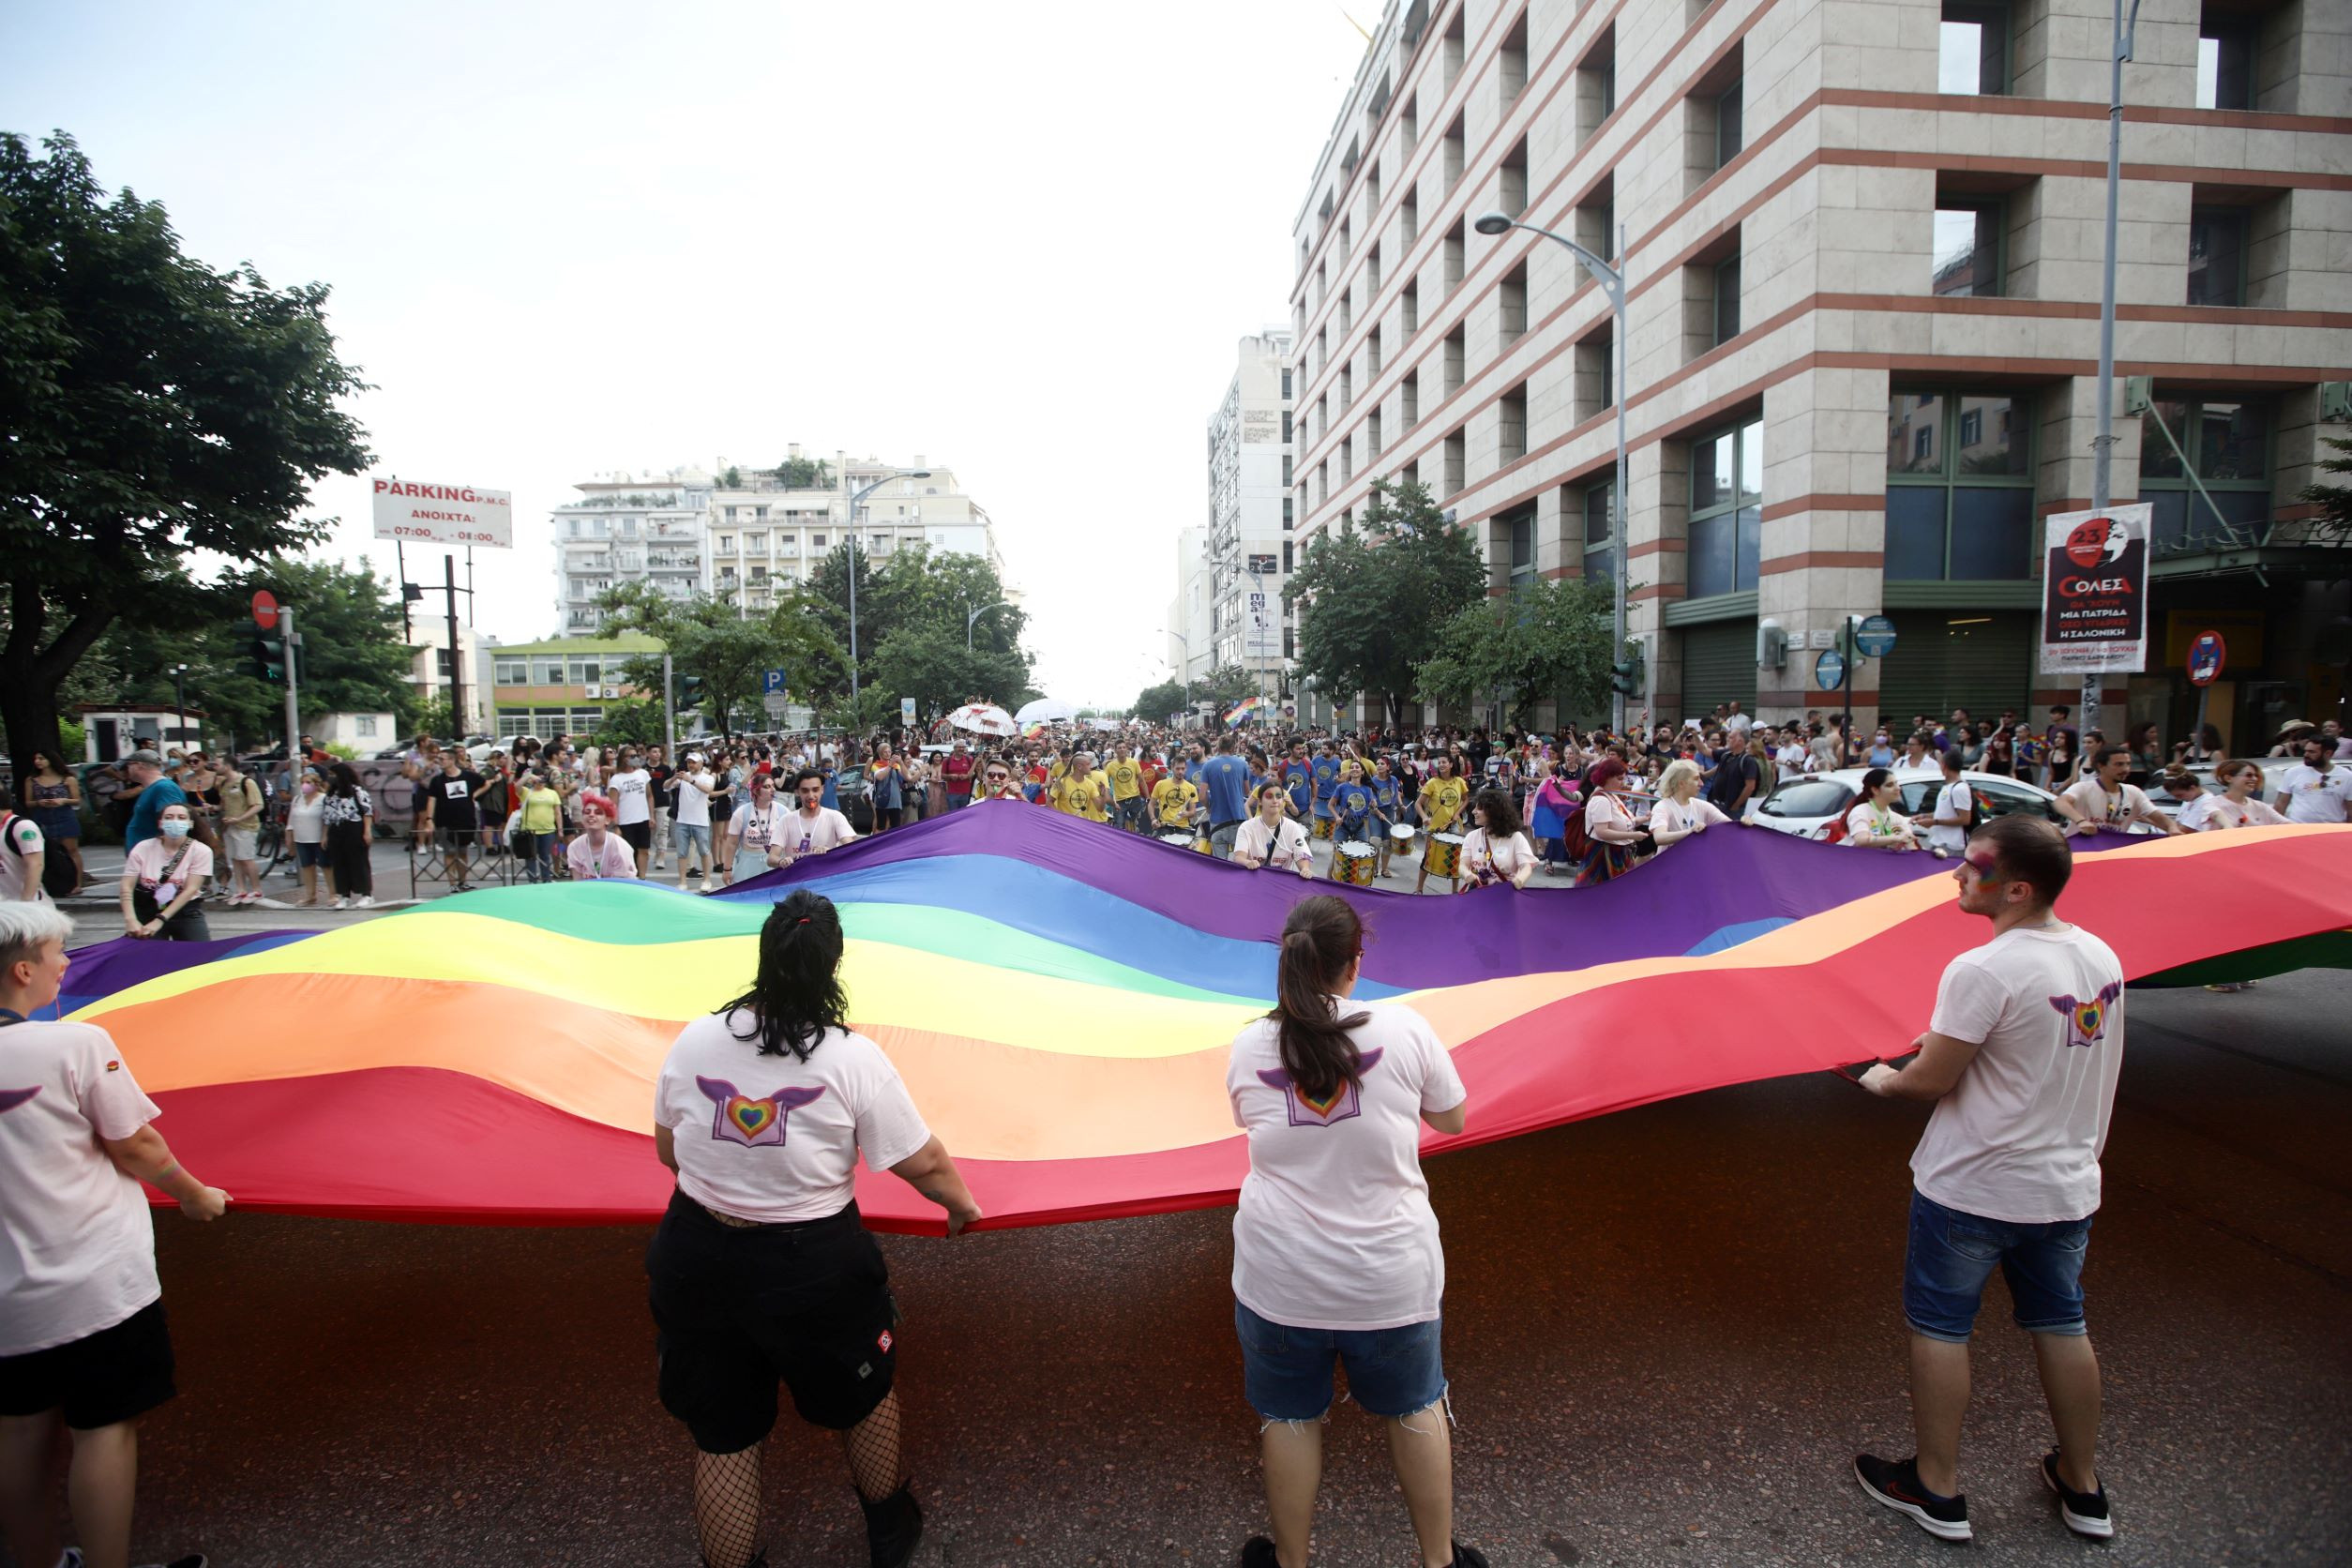 Συμβούλιο της Ευρώπης: Ανησυχία για διακρίσεις σε βάρος ΛΟΑΤΚΙ στην Ελλάδα